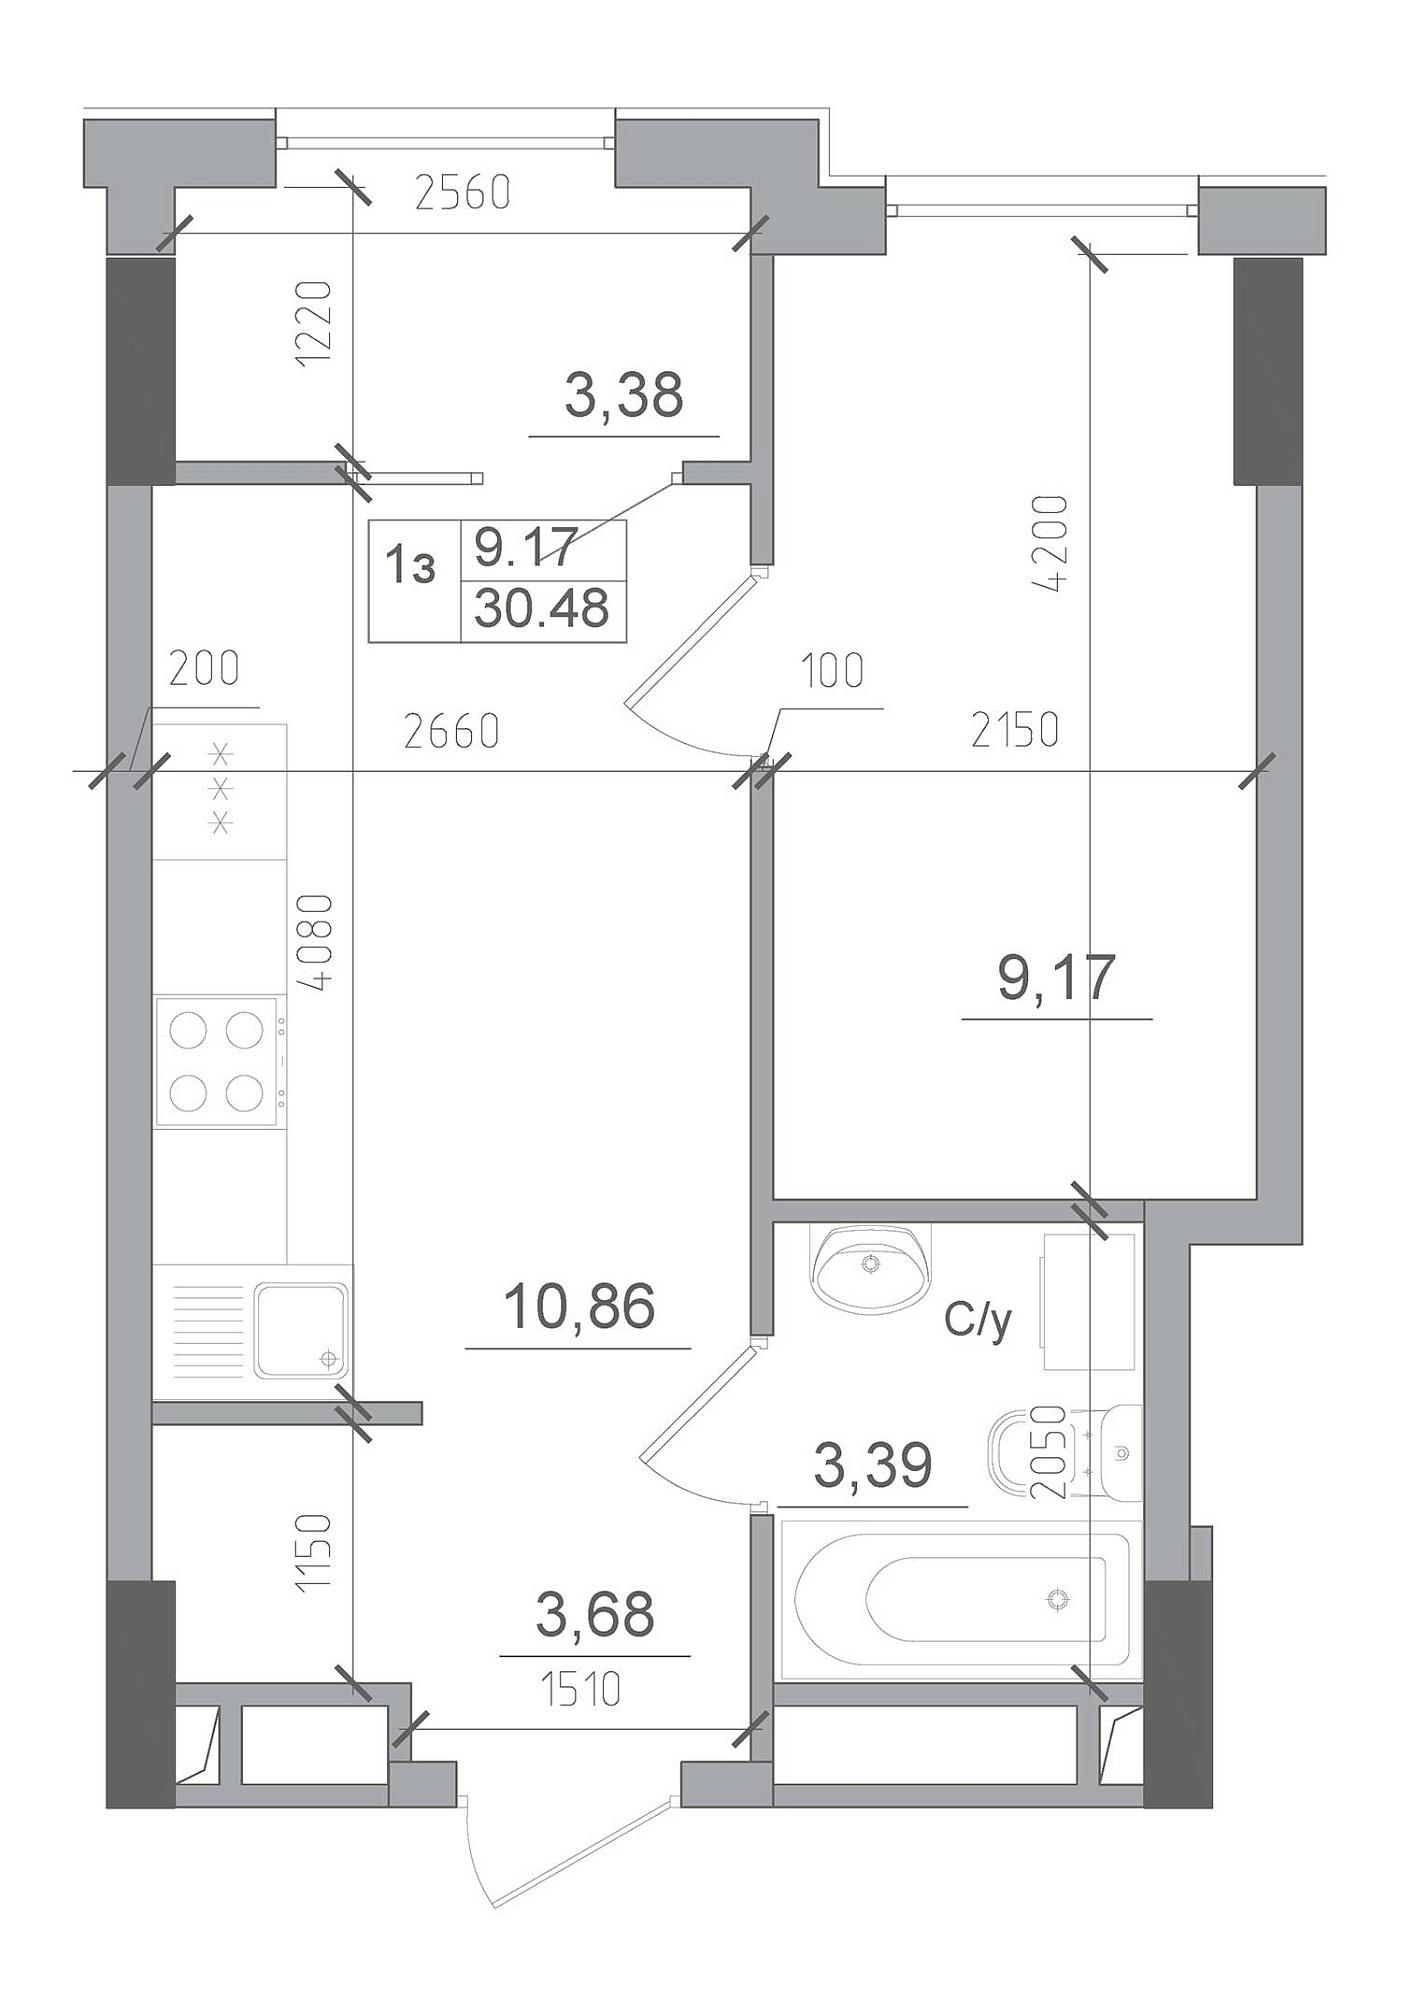 Планировка 1-к квартира площей 30.48м2, AB-22-07/00013.